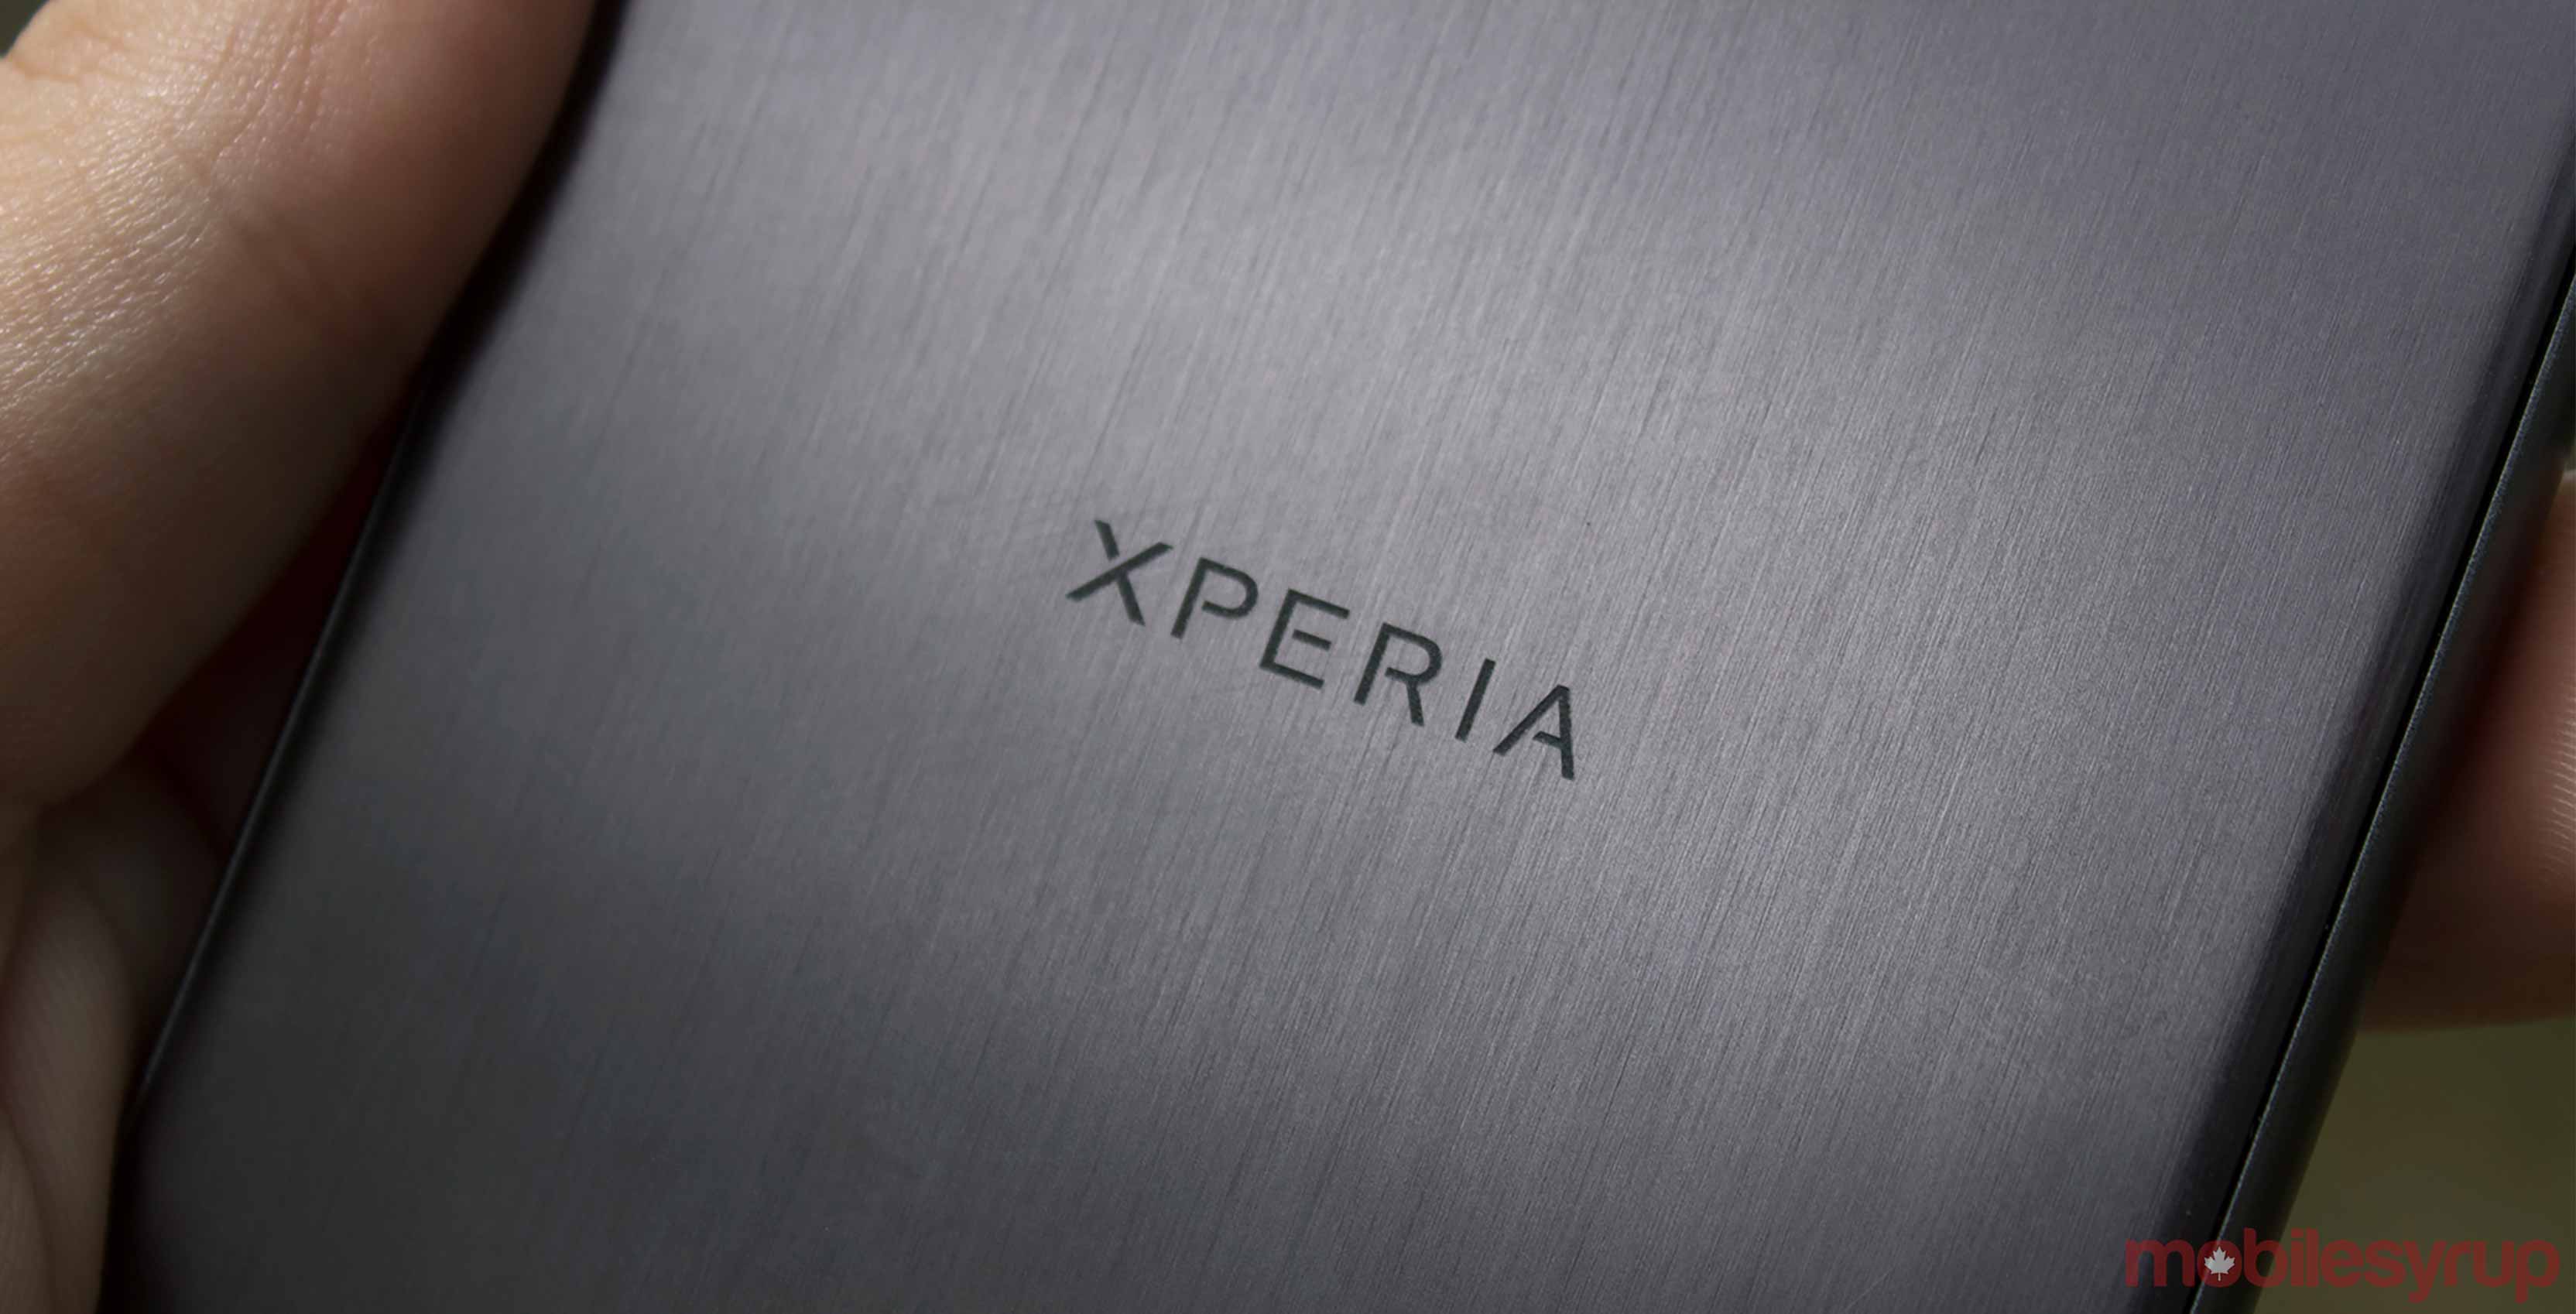 هاتف Xperia XZ1 | تسريبات جديدة تخص الهاتف القادم من سوني وصور تظهره من جميع الزوايا